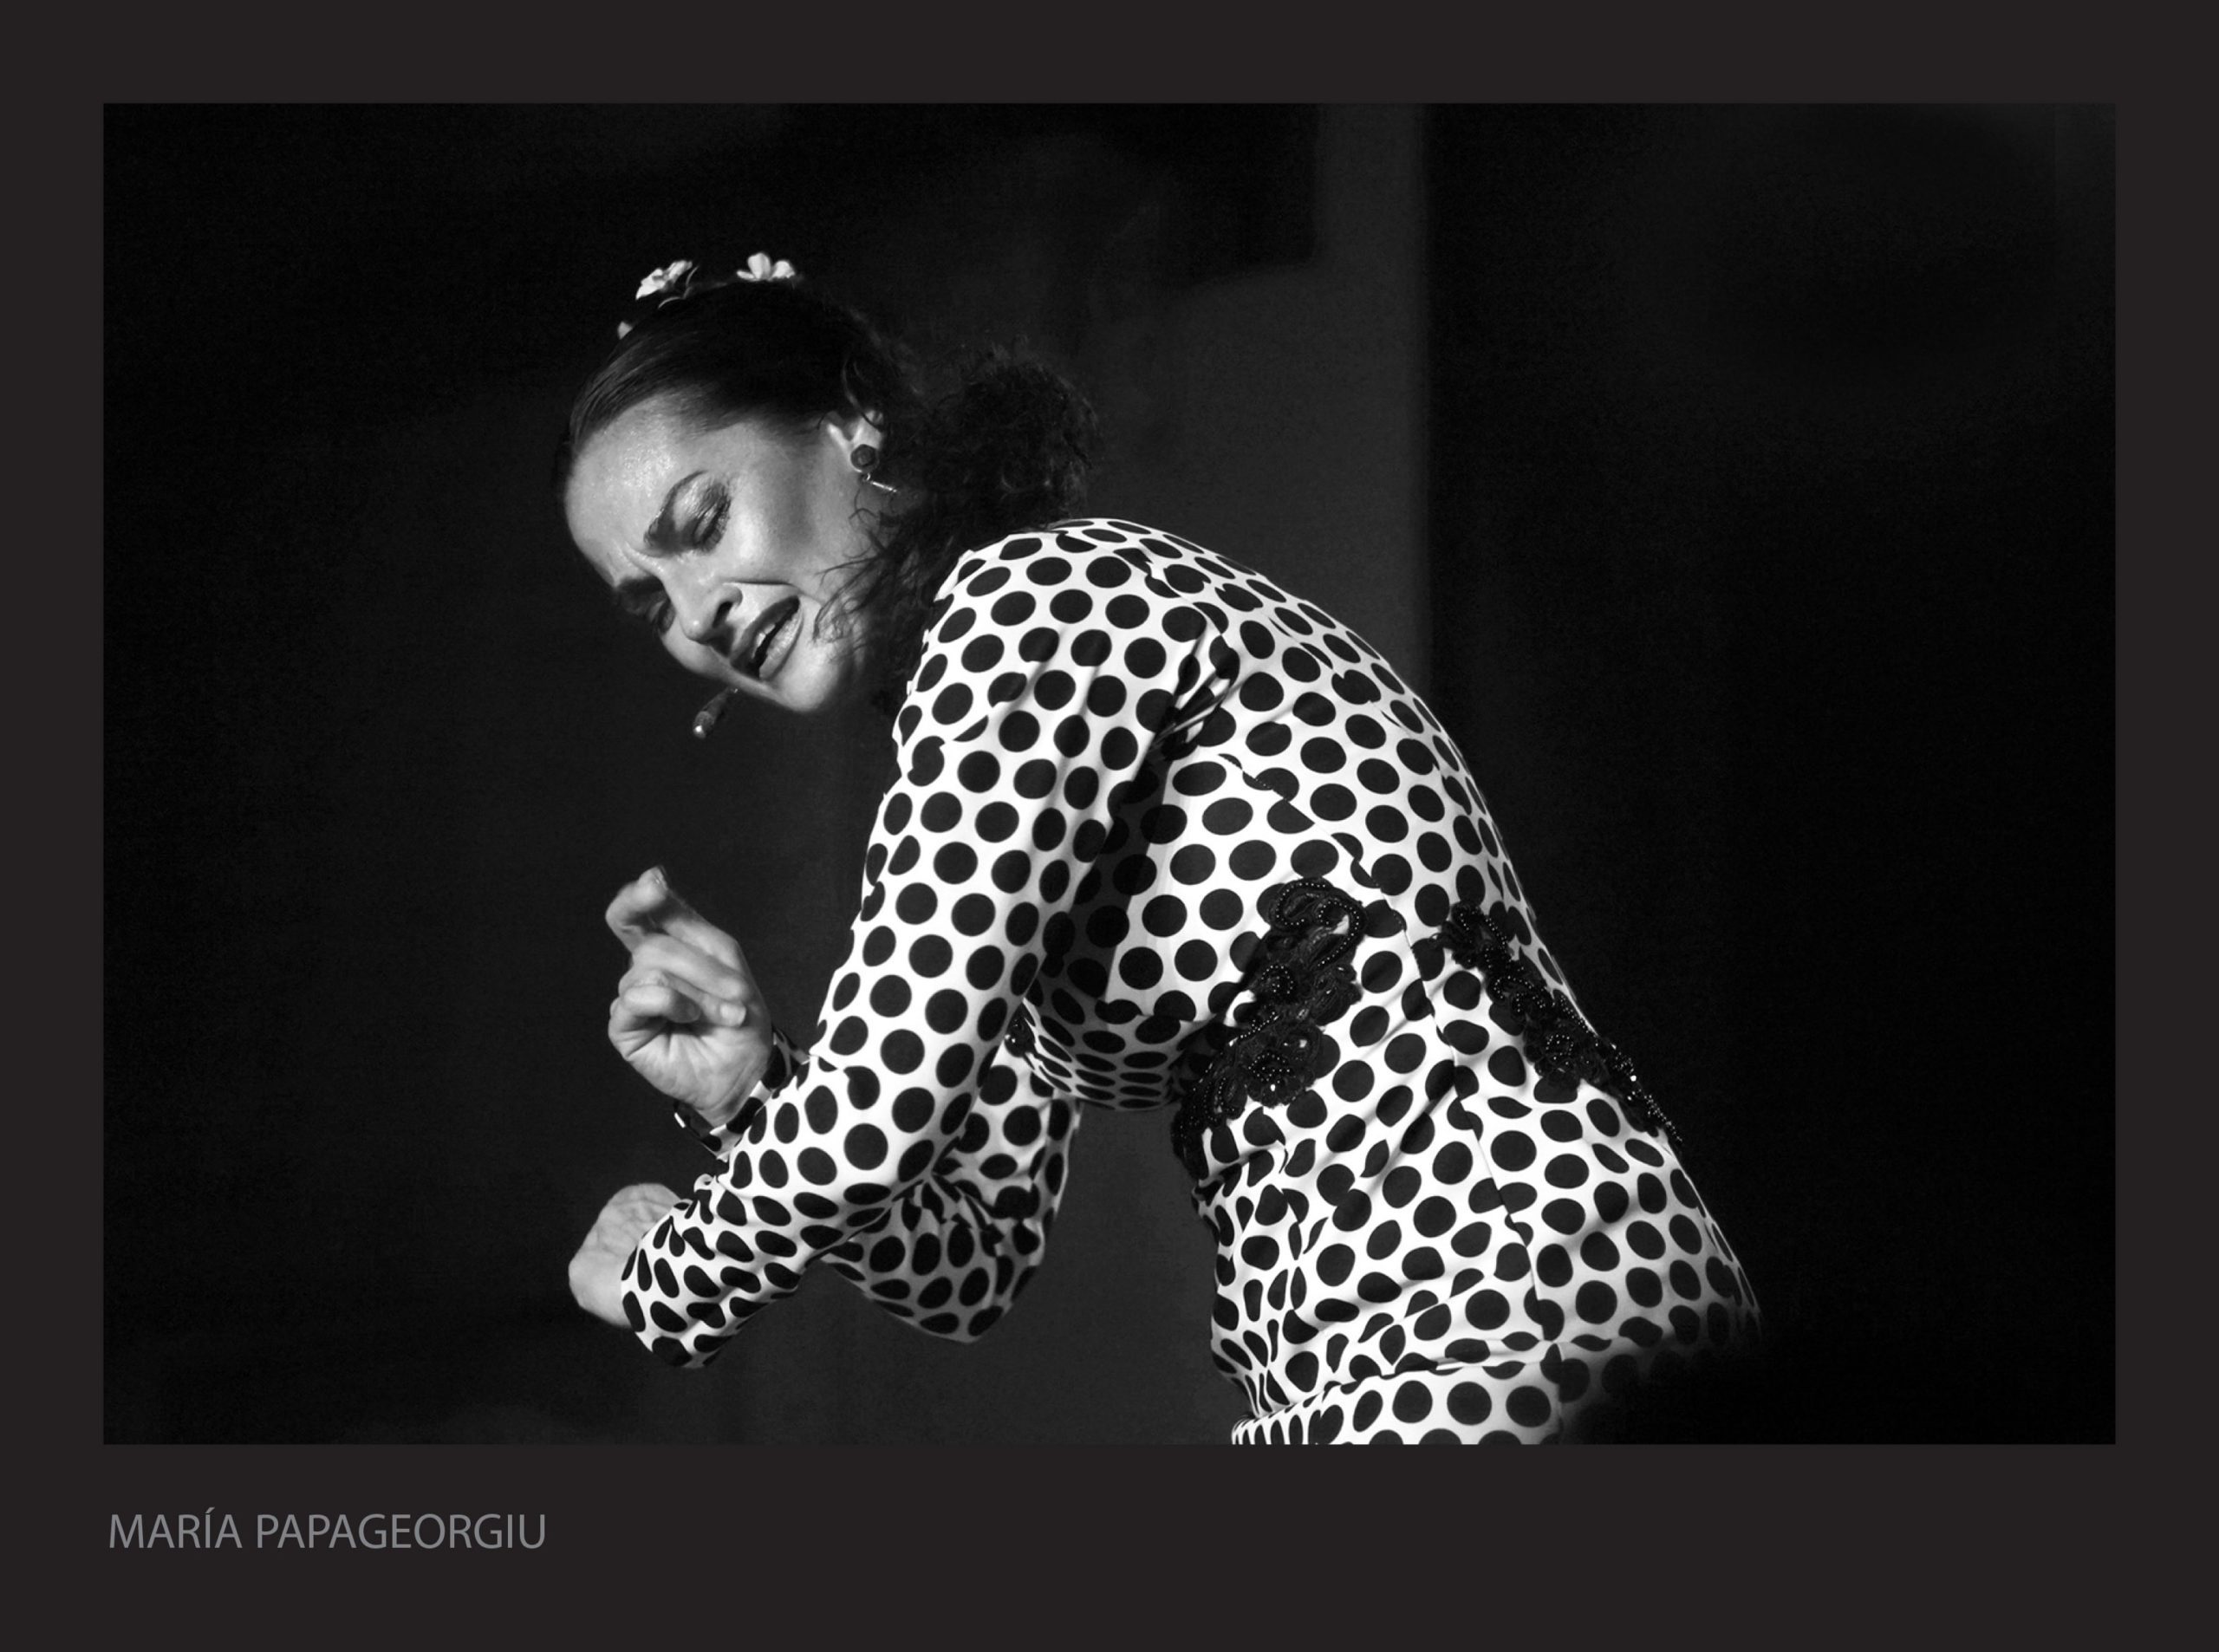 Fotografía del concurso de Fotografía Flamenco. Por María Papageorgiu